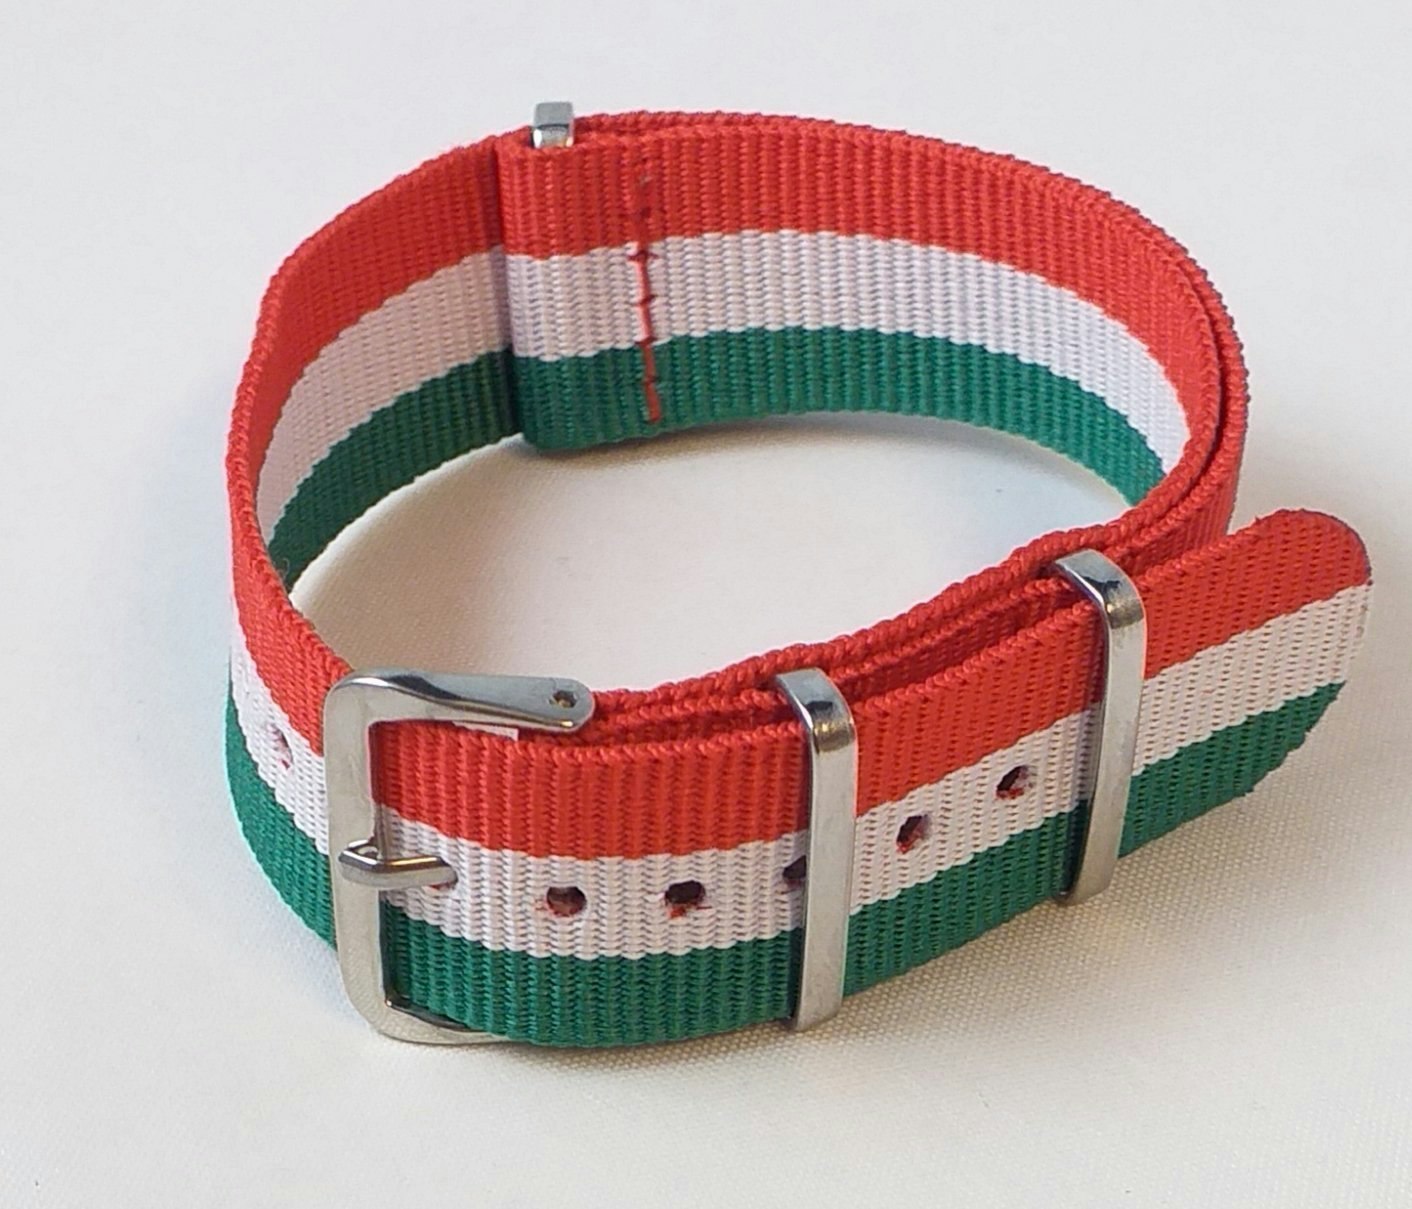 NATO Armband Italienska flaggans färger - Bredd 20 mm